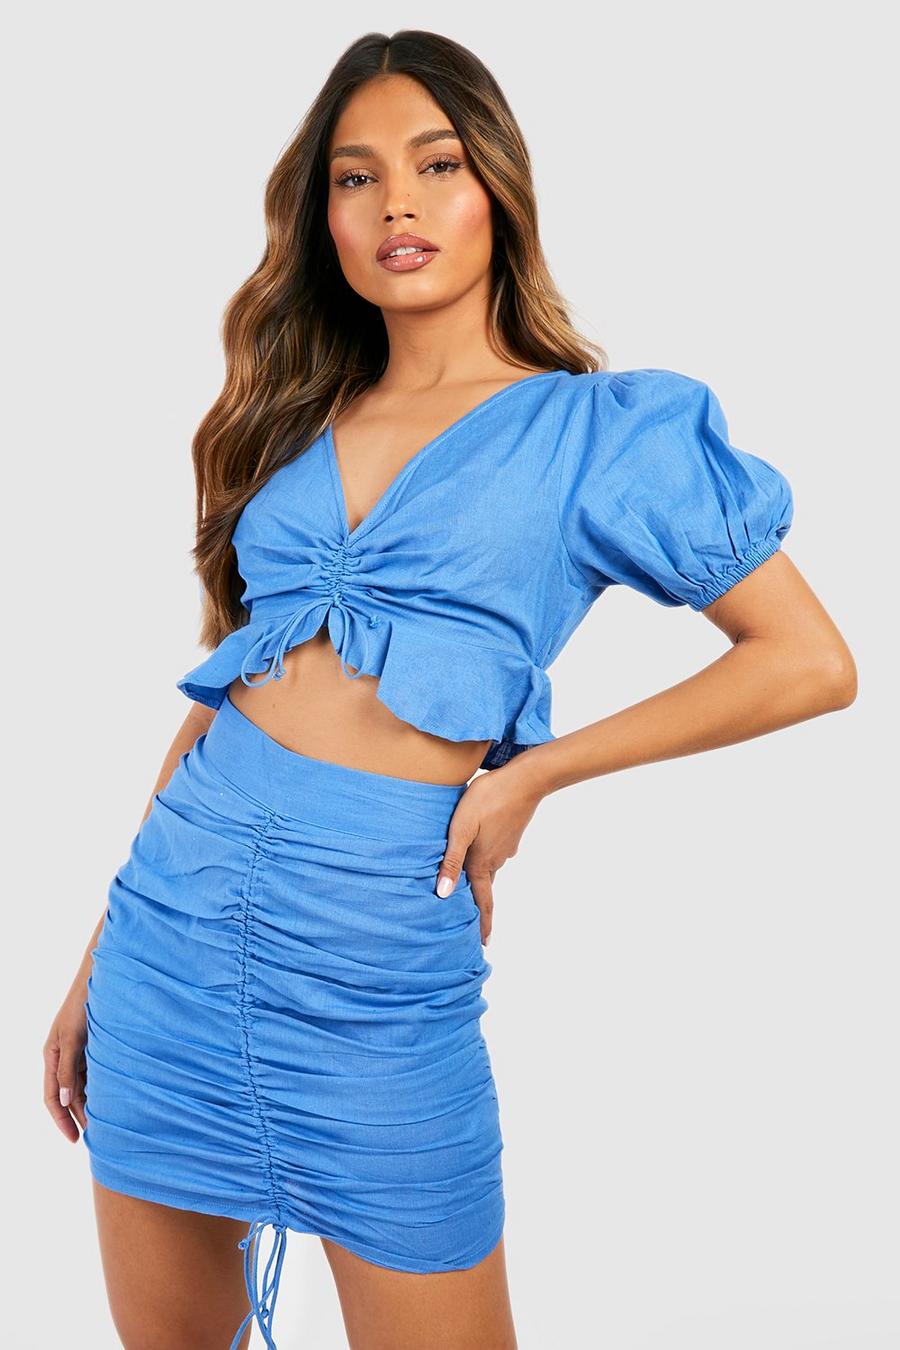 כחול בוהק azul חצאית מיני וטופ עם קפלים בחזית